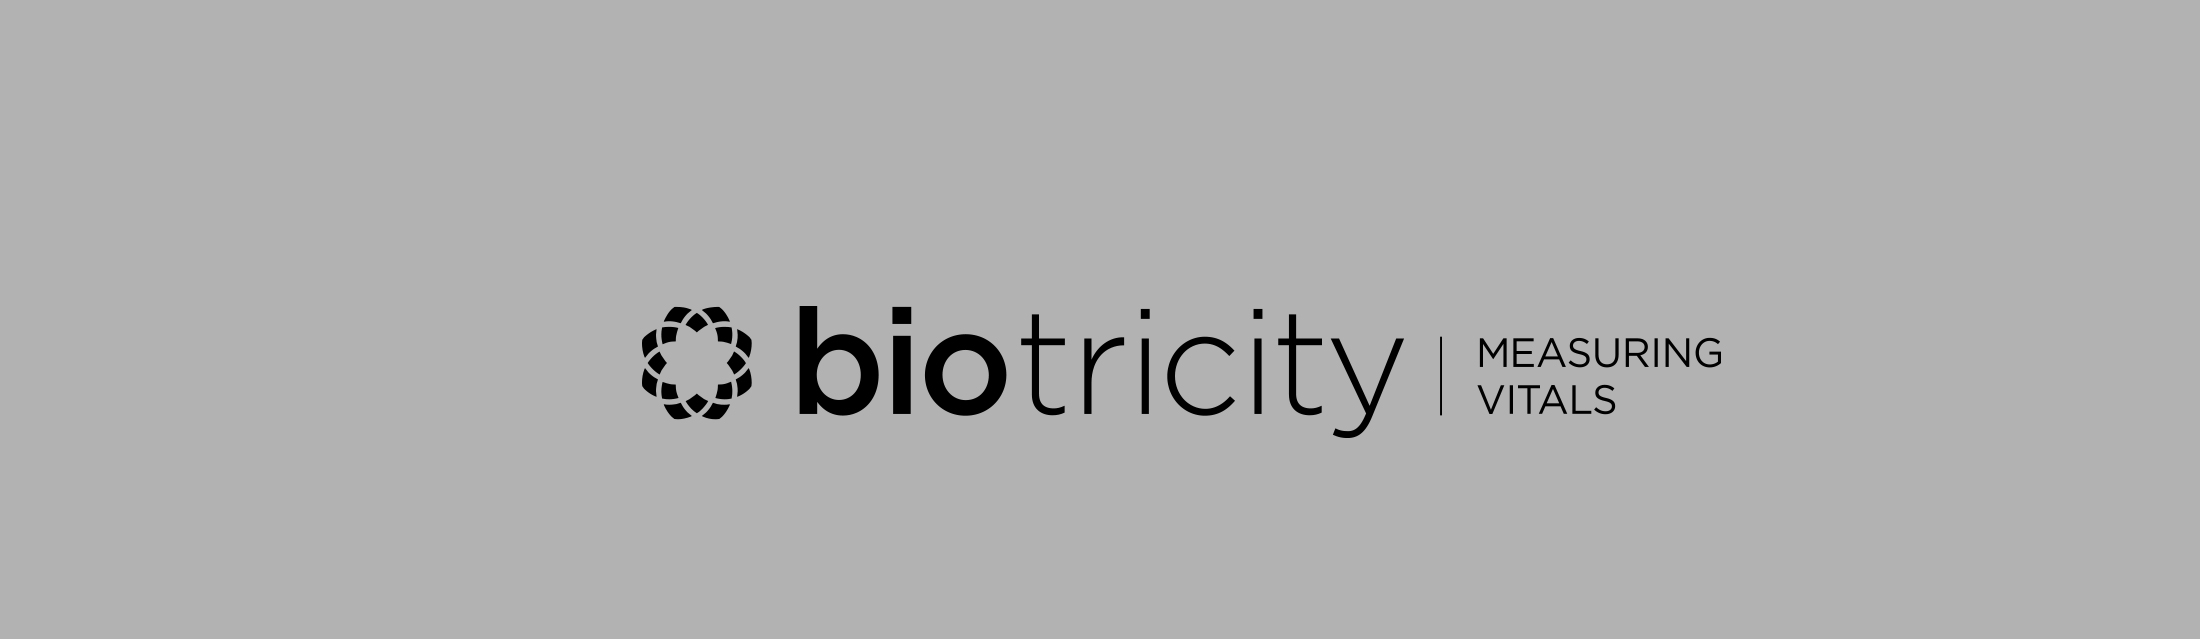 biotricity